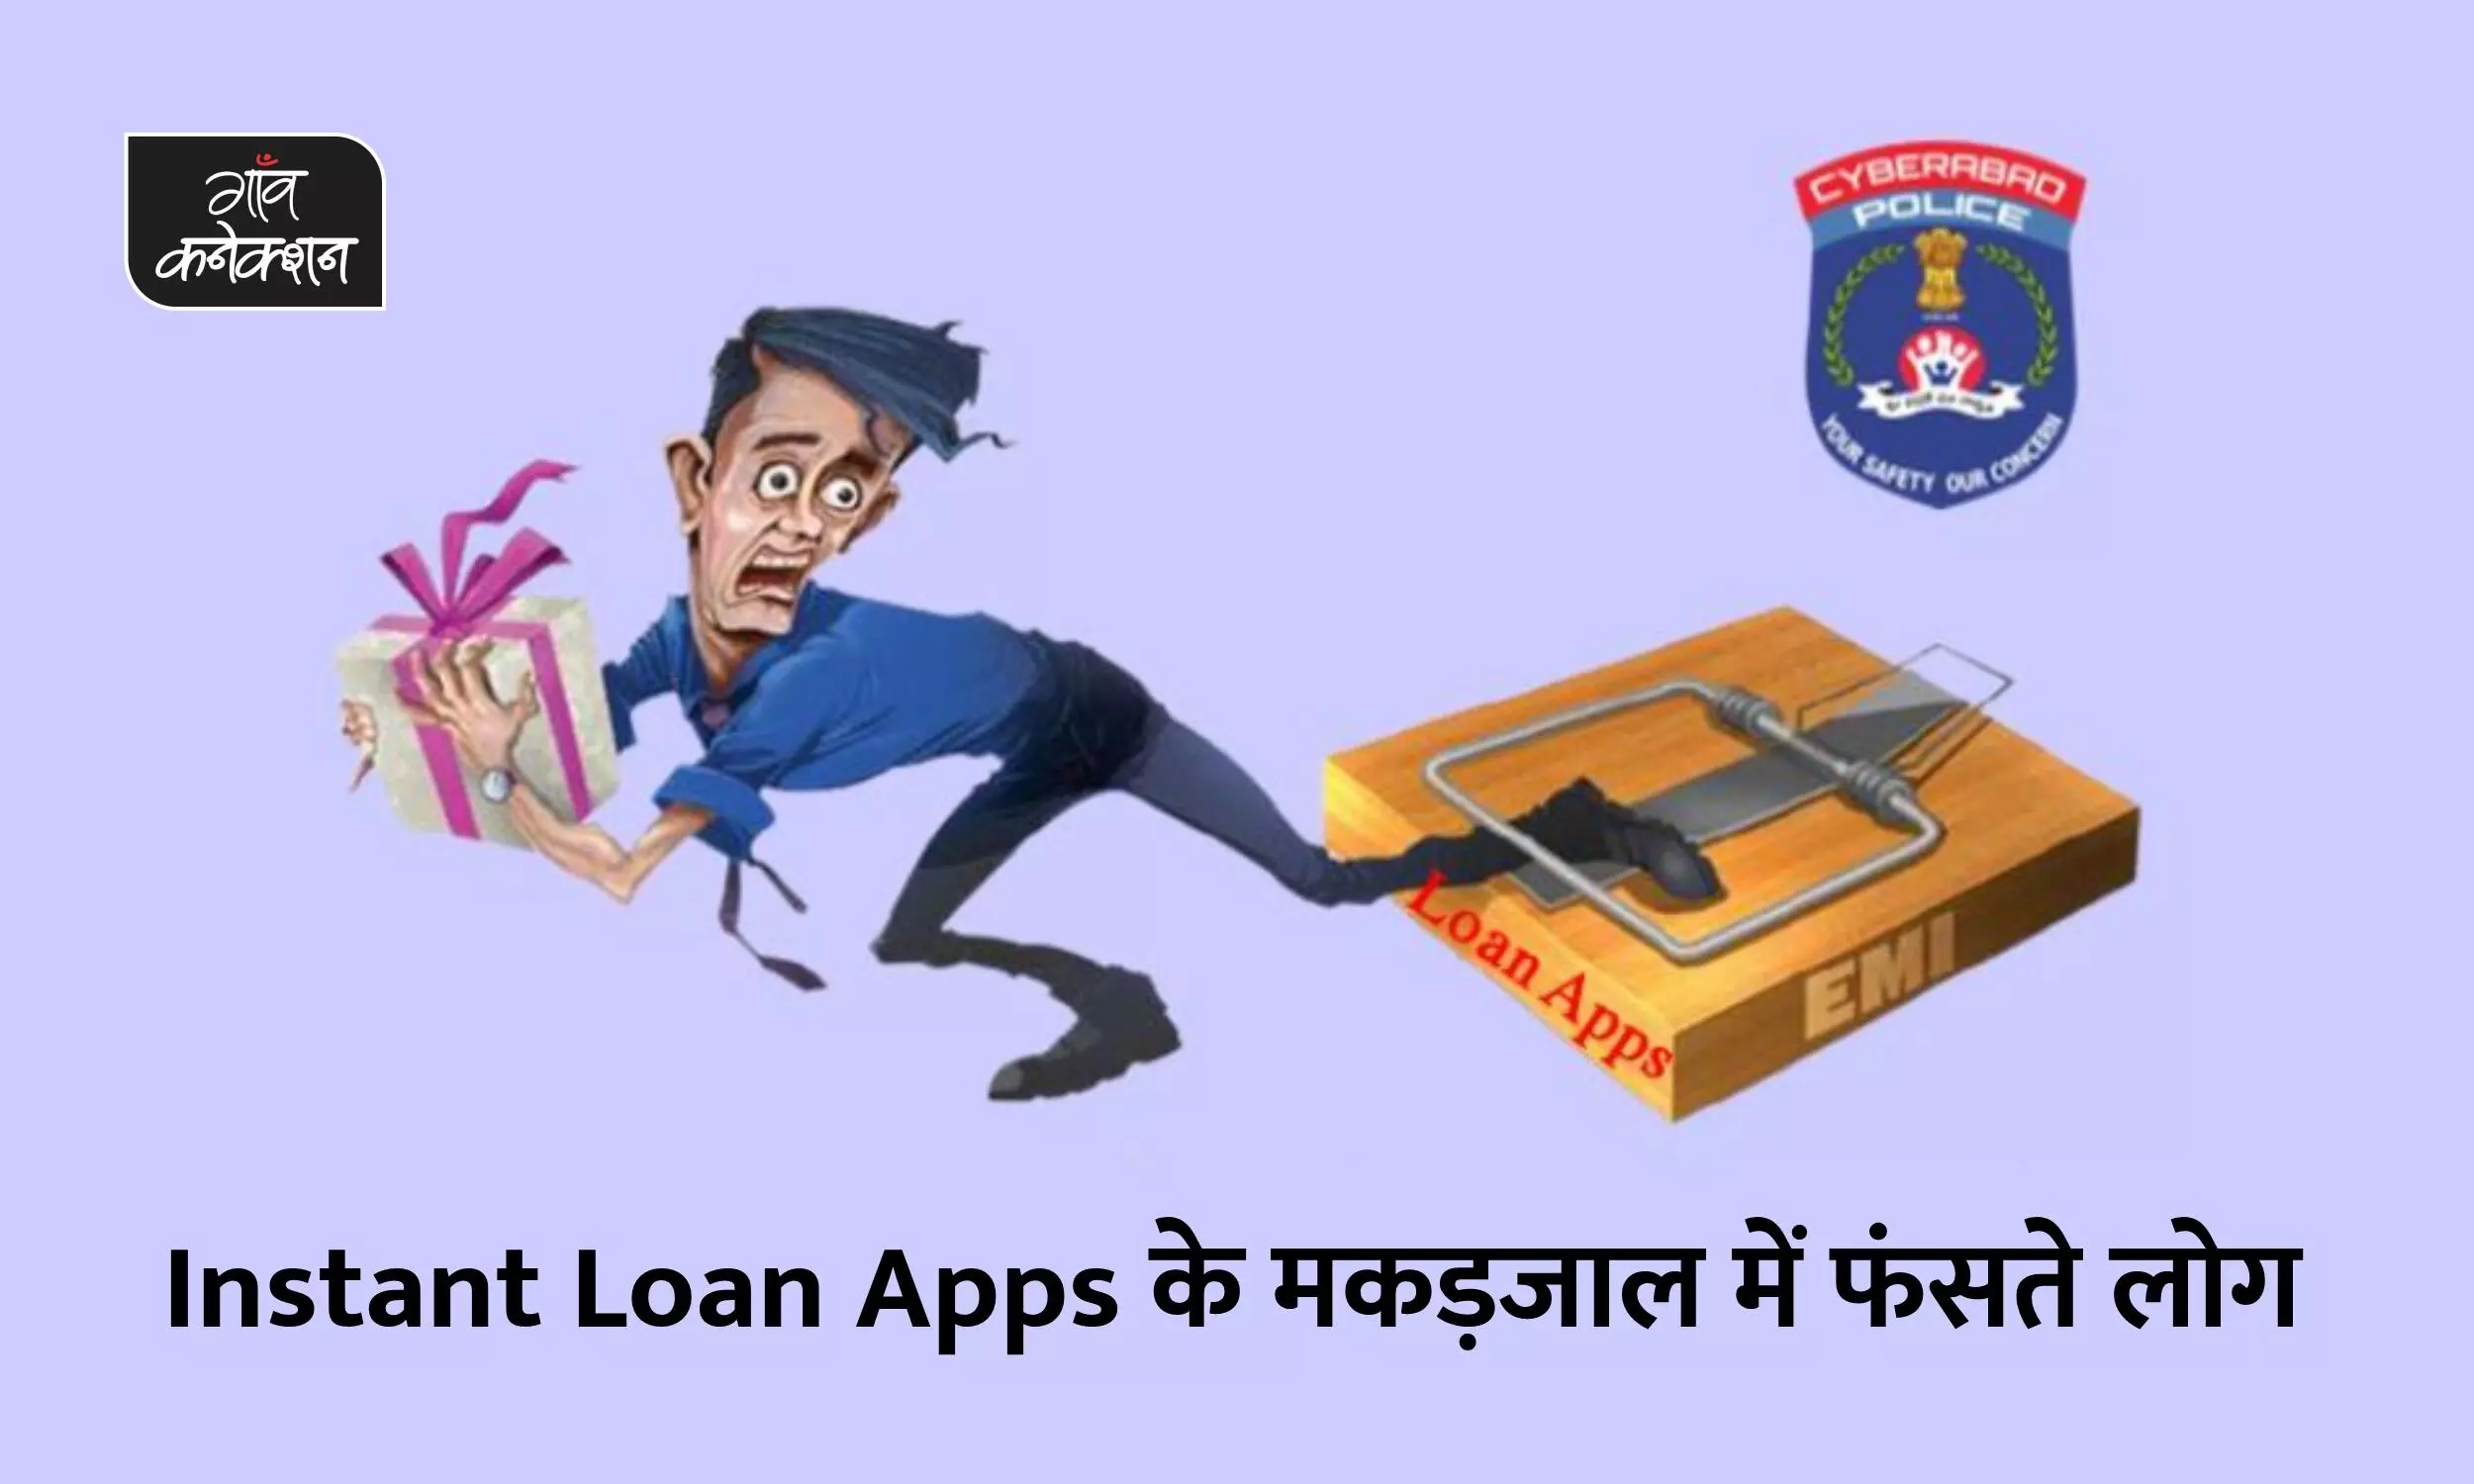 फटाफट लोन ऐप का मकड़जाल: मोबाइल लोन ऐप से 3500 रुपए कर्ज लिया, 5 लाख रुपए  देकर हुआ कर्जमुक्त, जान भी जाते-जाते बची | instant loan apps are taking  lives people are